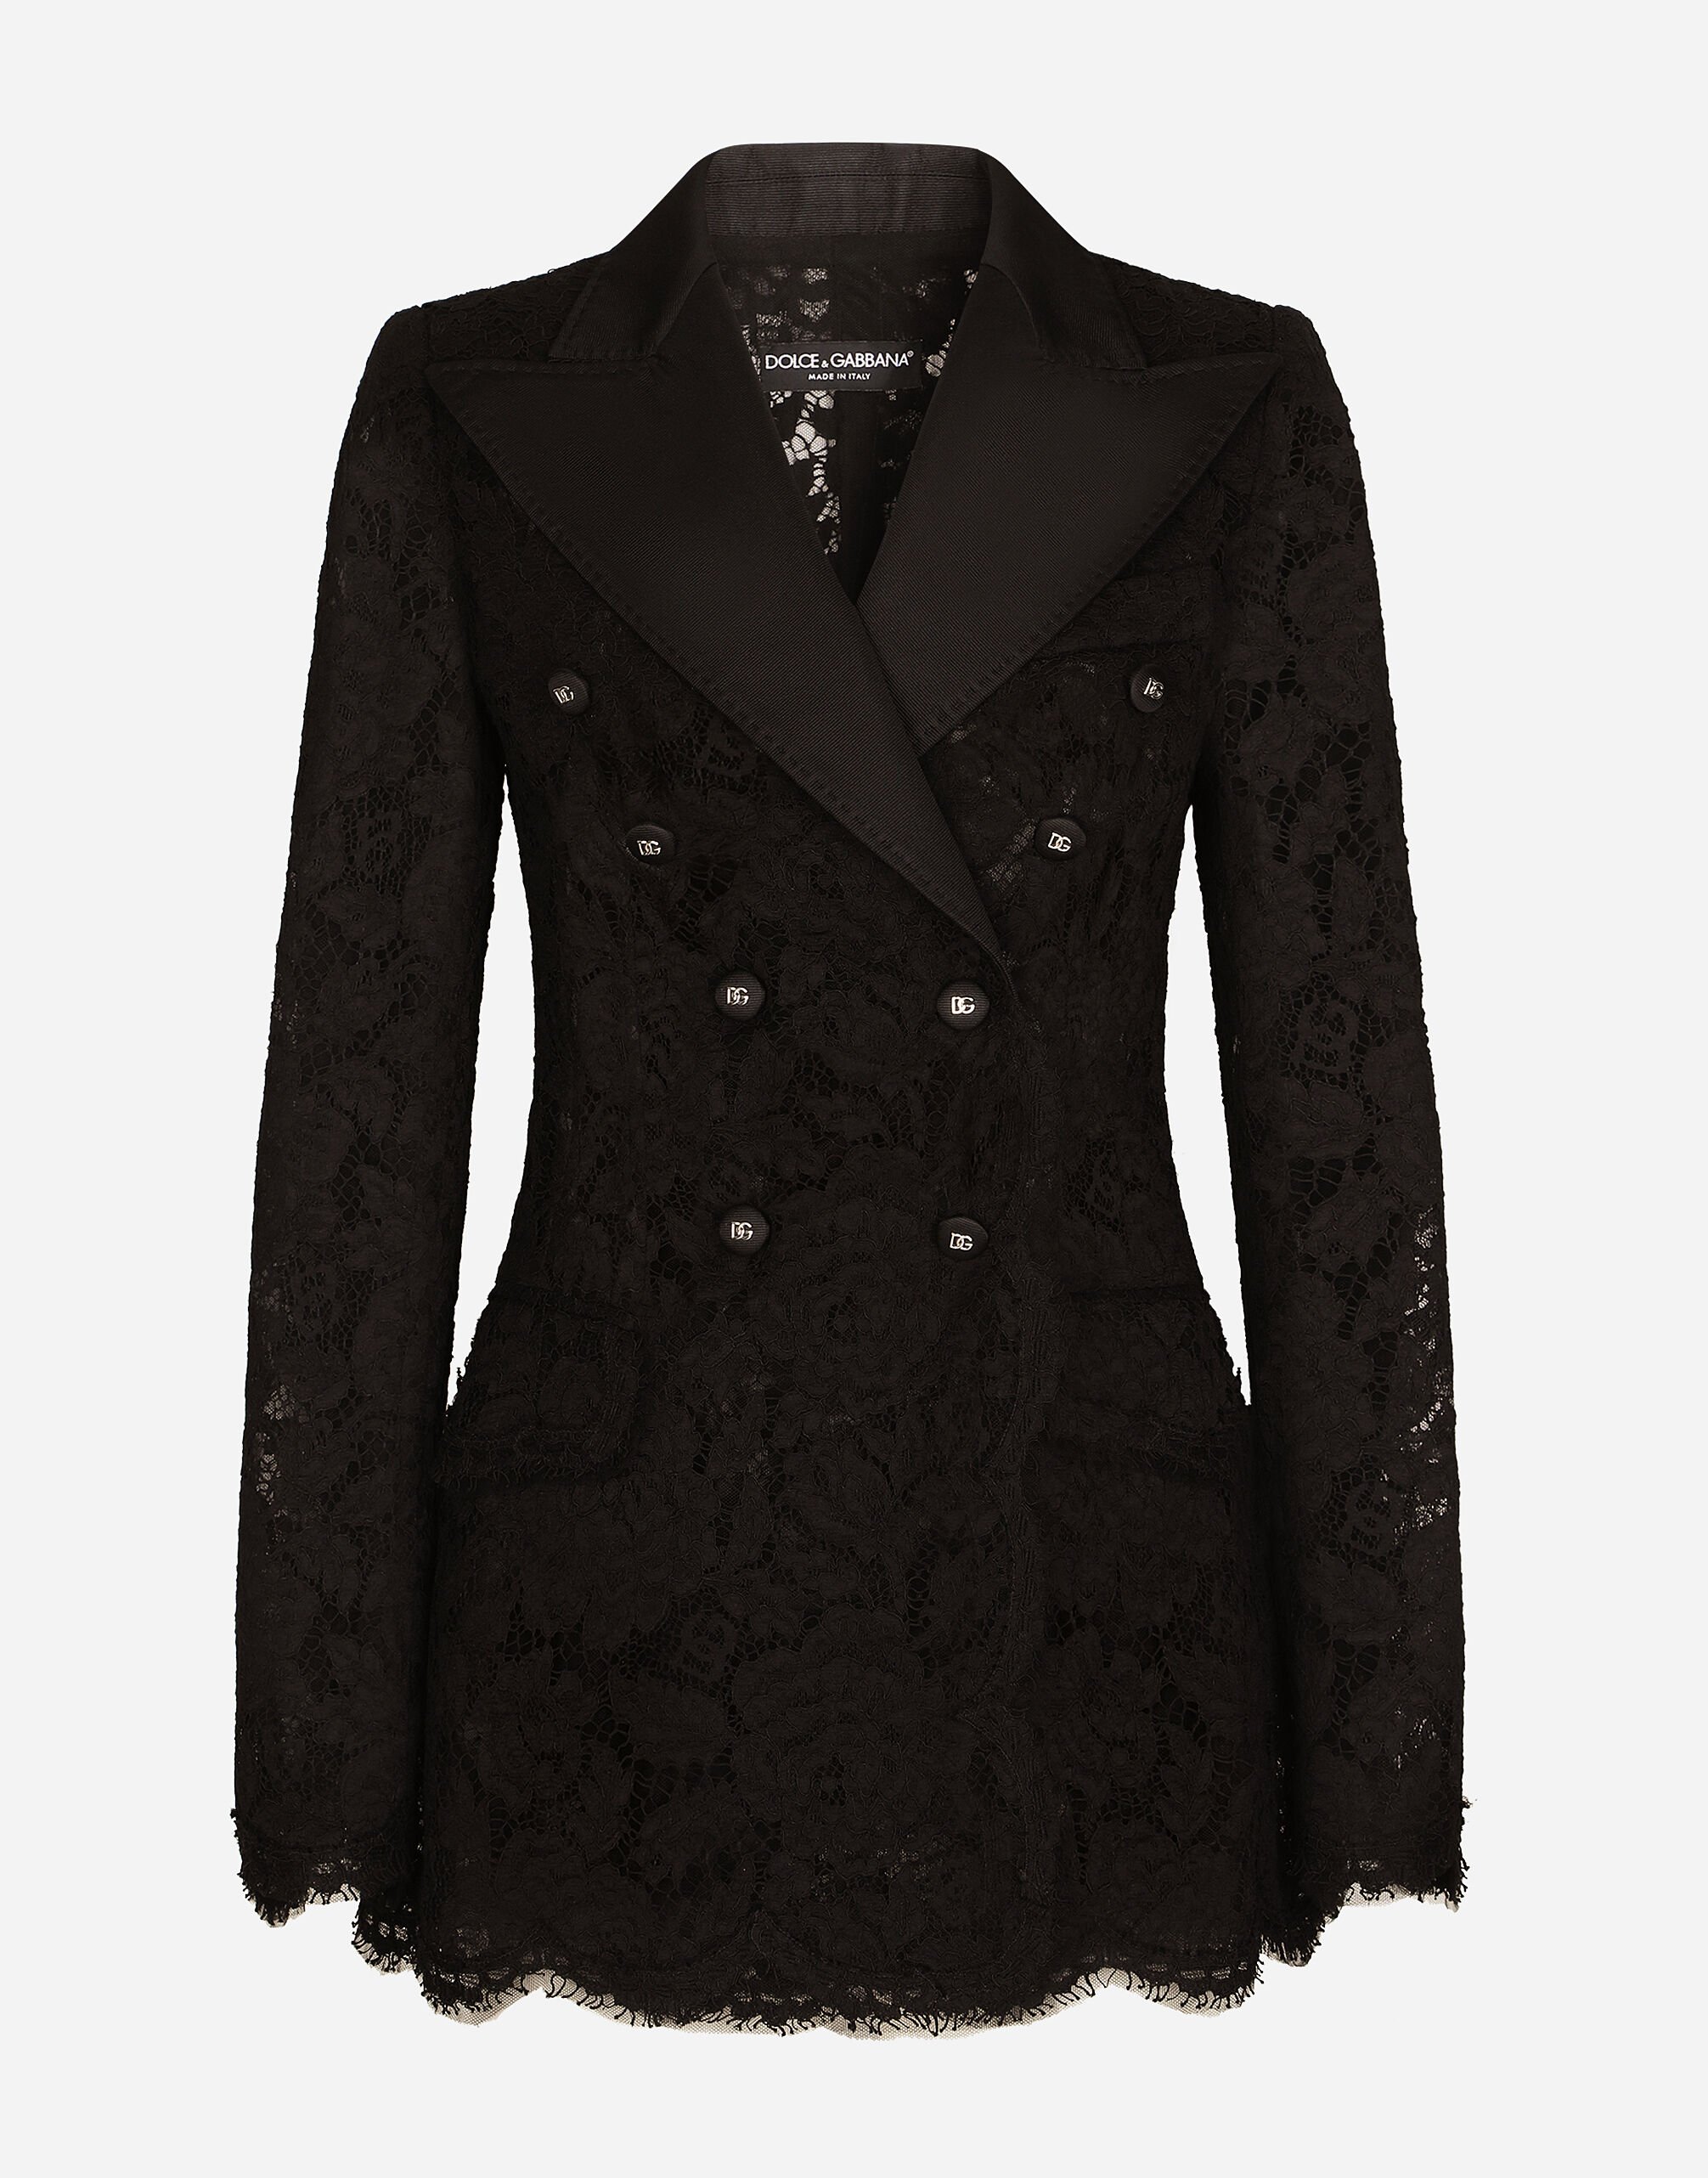 Dolce & Gabbana Turlington-Jacke aus elastischer Spitze mit Logo Drucken F29UDTIS1P4